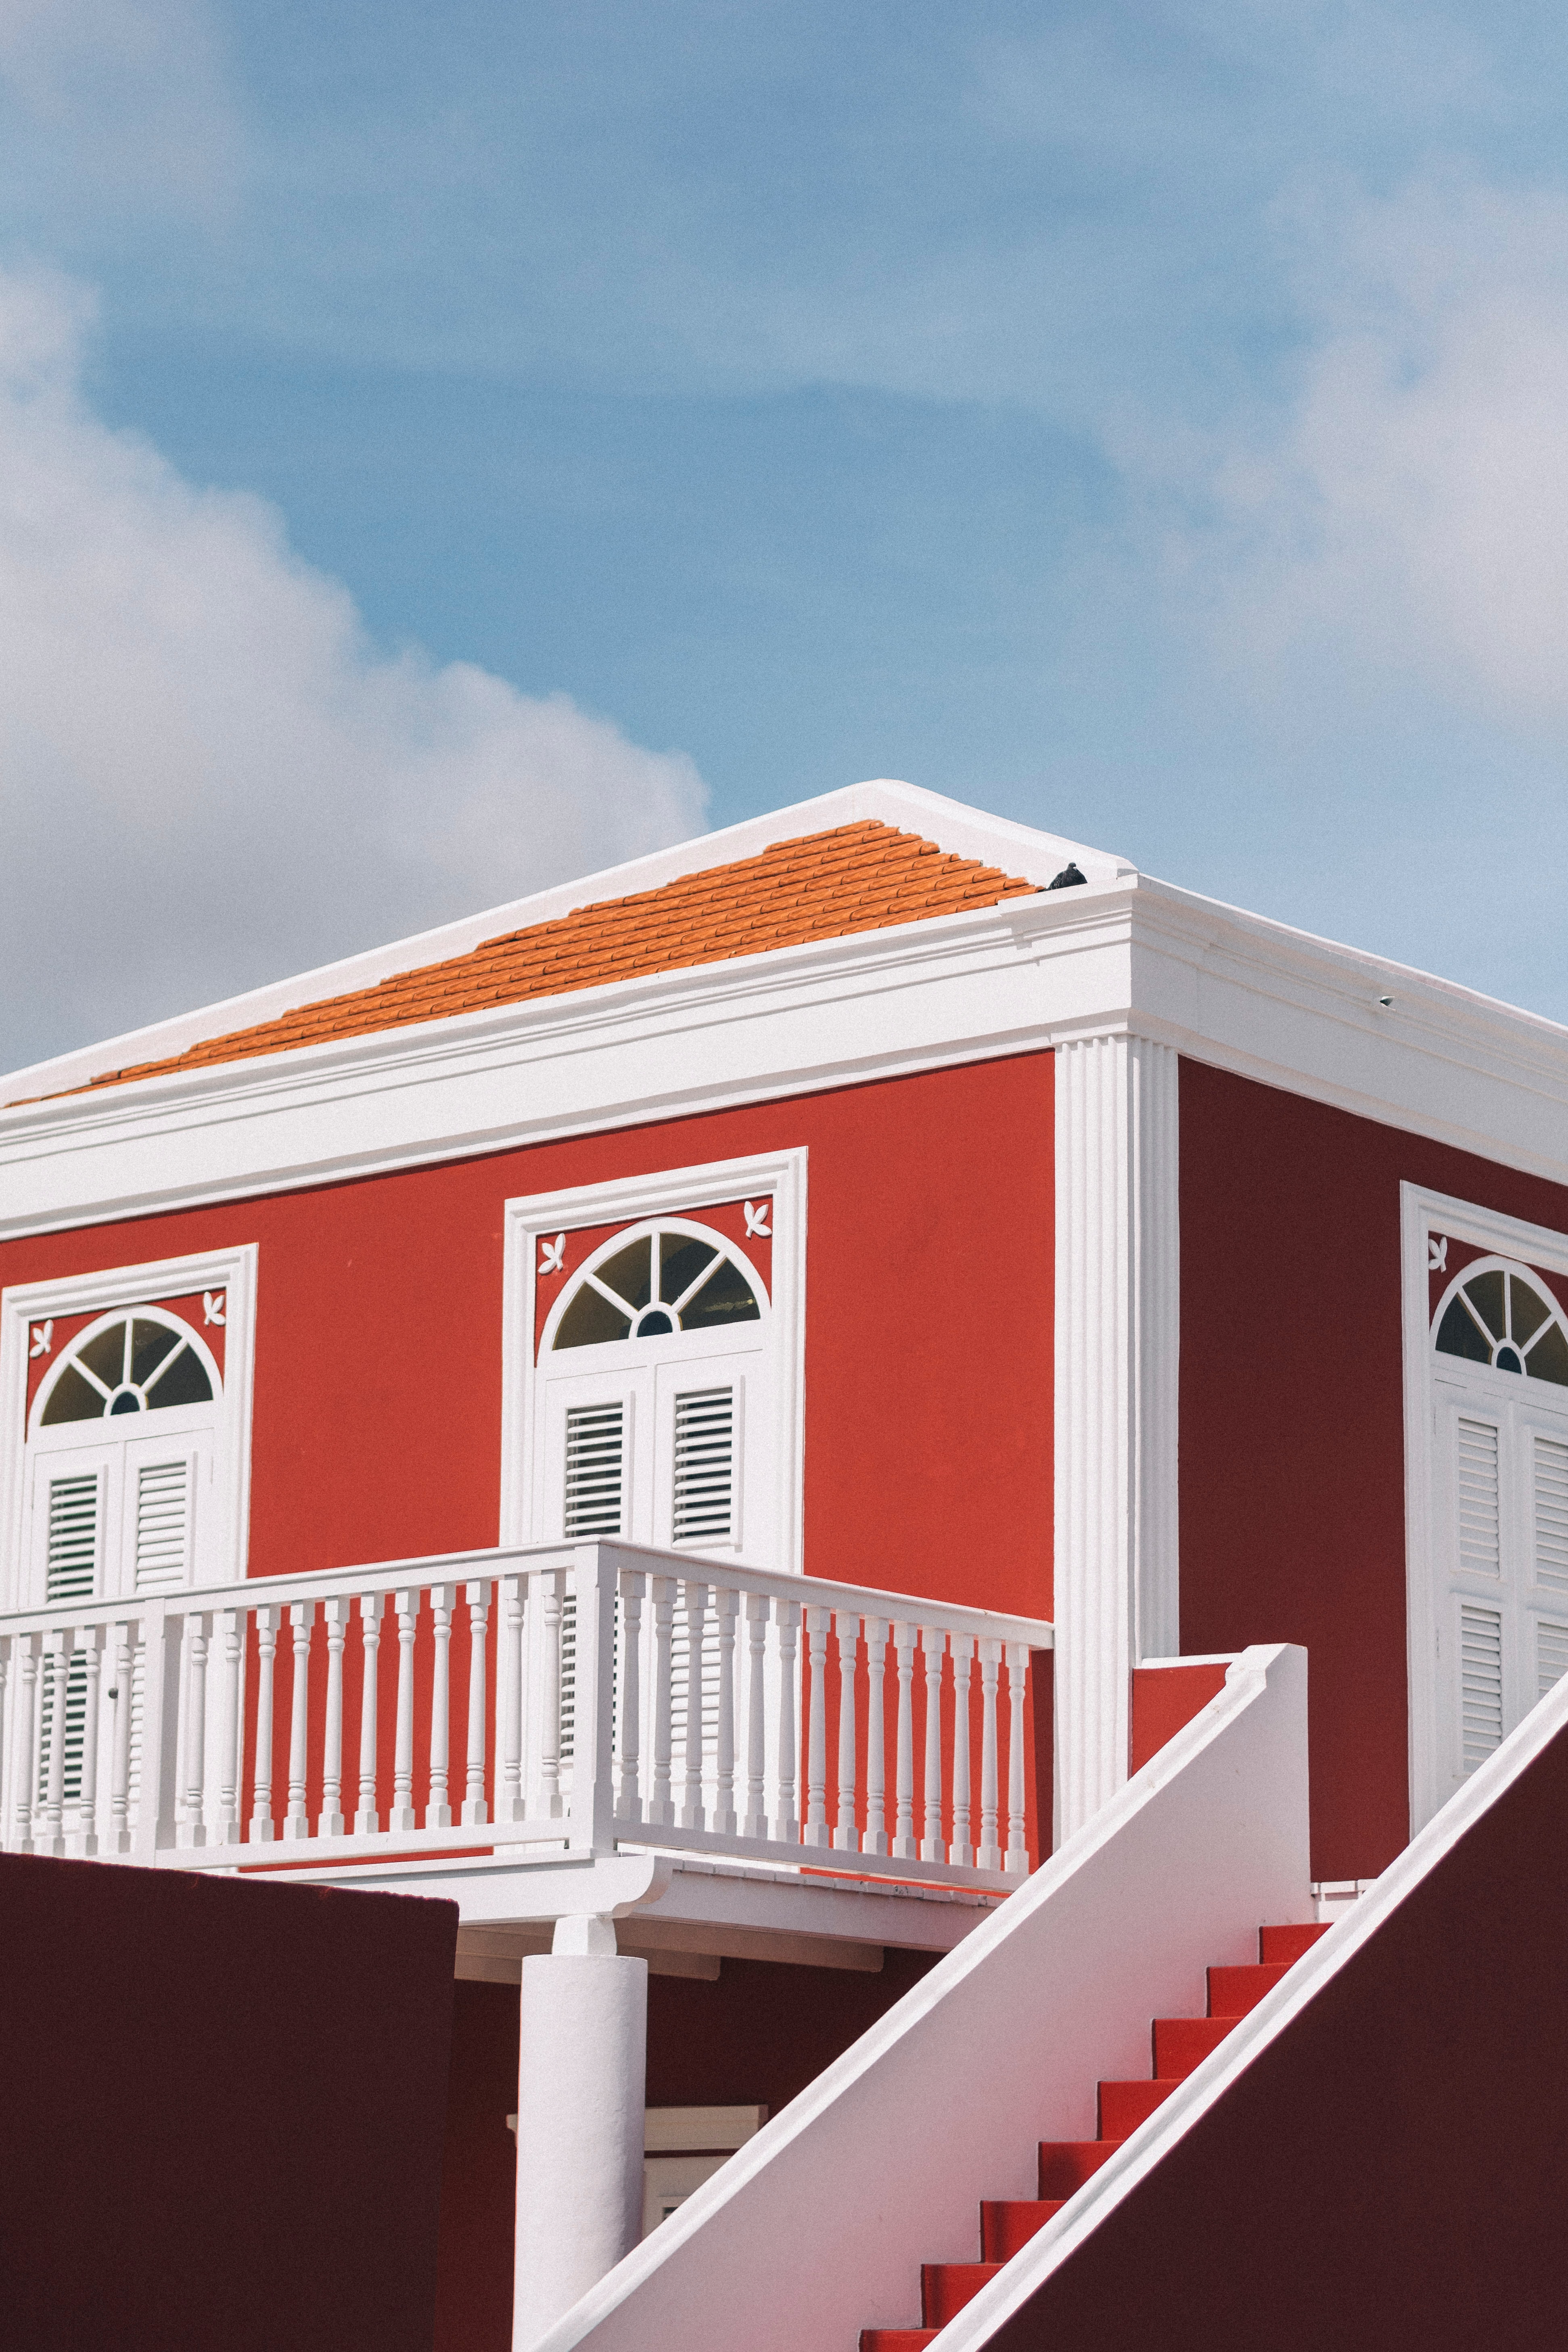 Oranjestad Aruba